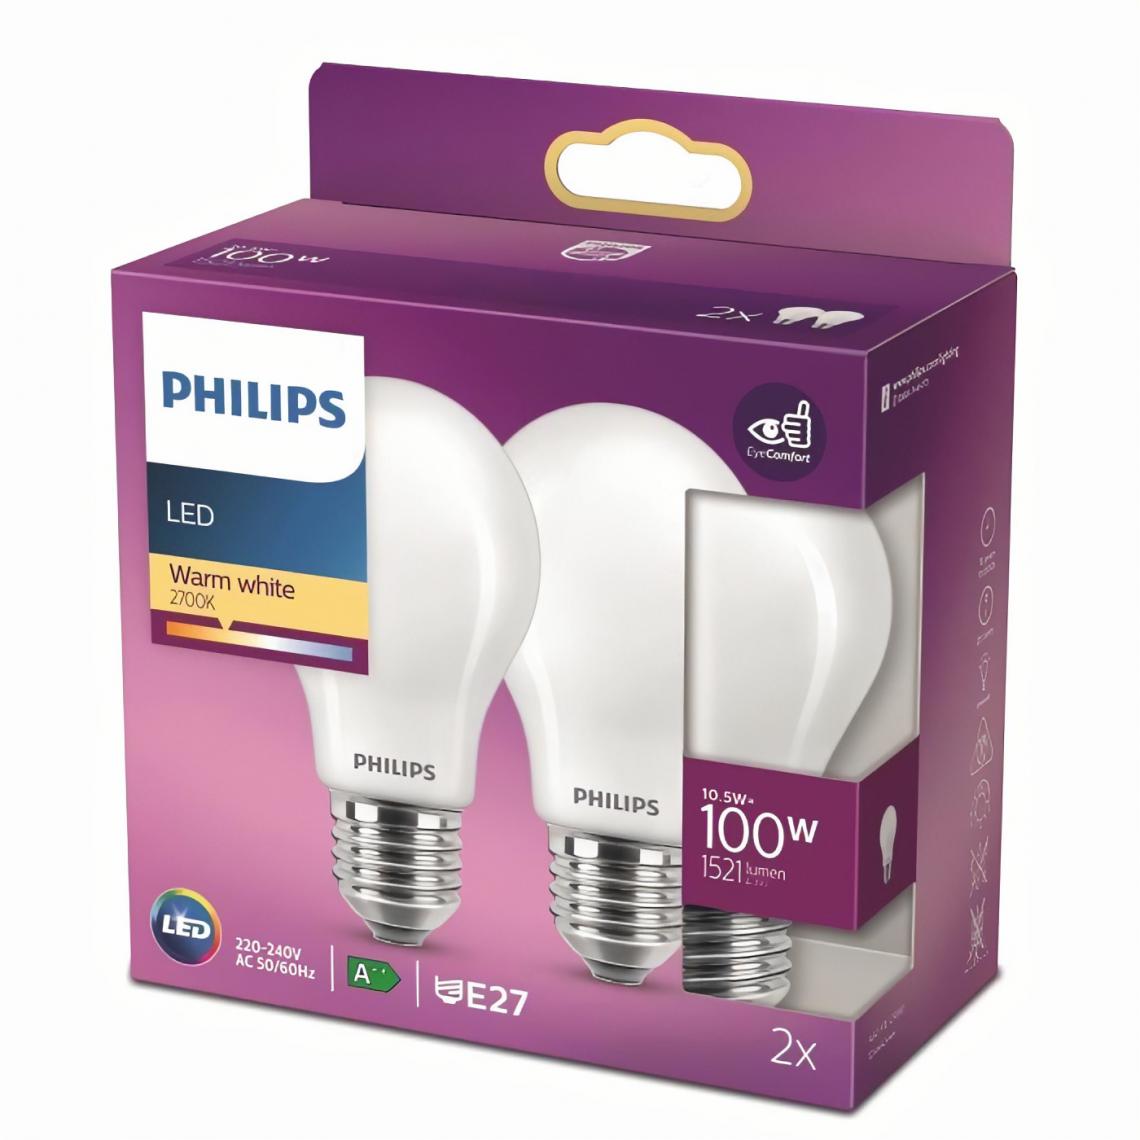 Philips - Philips ampoule LED Equivalent100W E27 Blanc chaud non dimmable, verre, lot de 2 - Ampoules LED